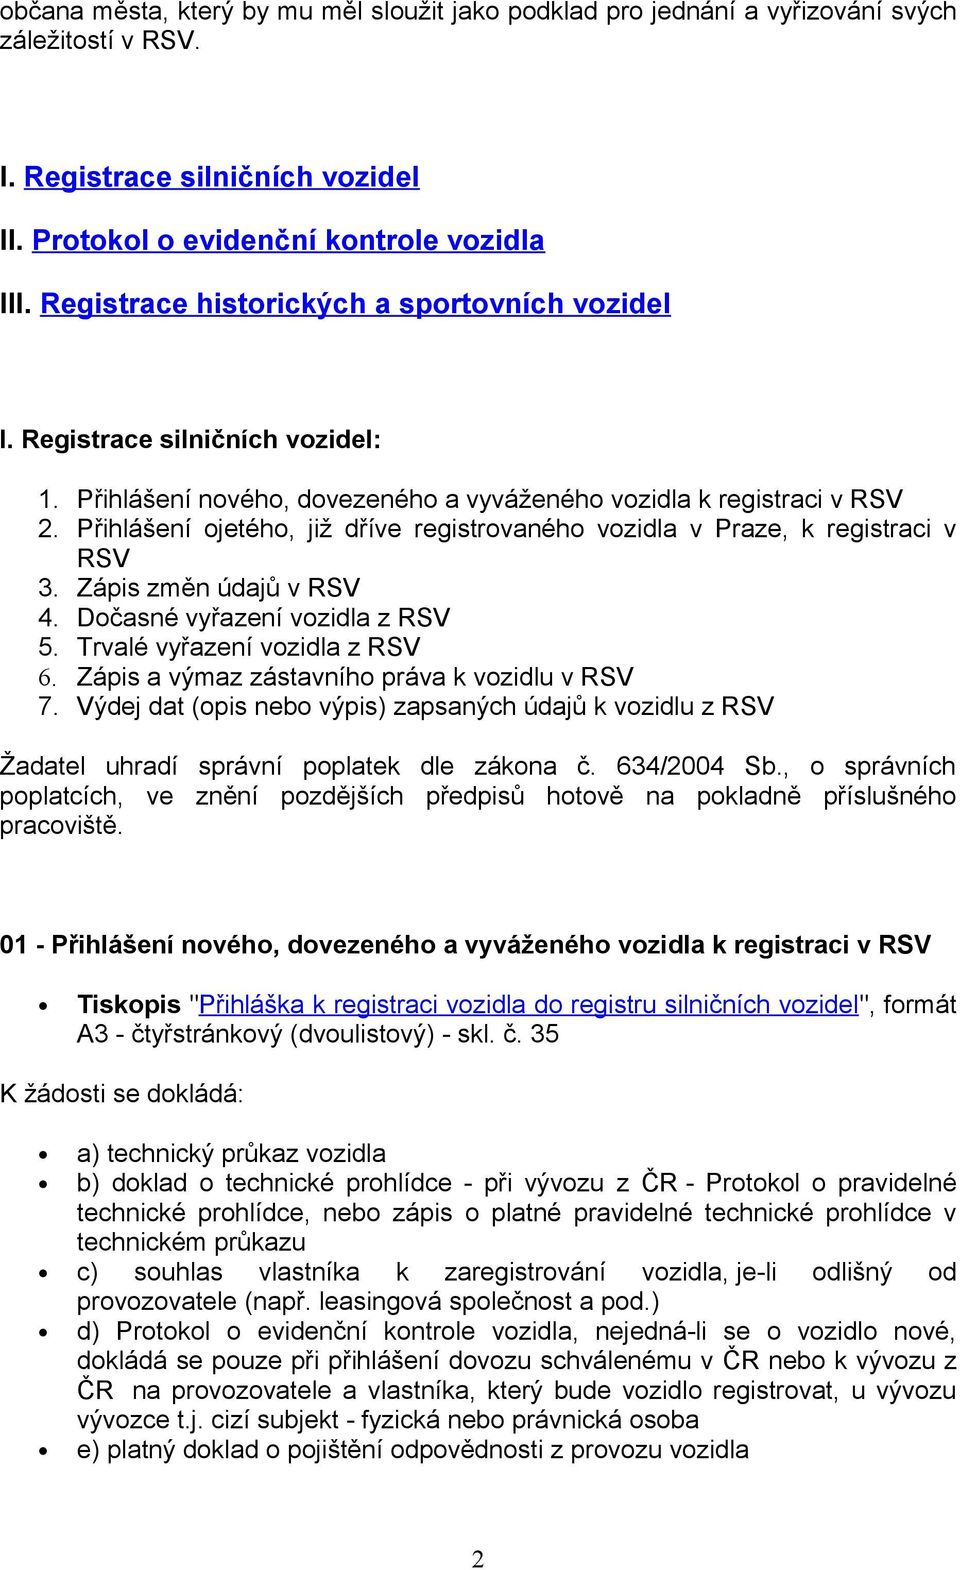 Přihlášení ojetého, již dříve registrovaného vozidla v Praze, k registraci v RSV 3. Zápis změn údajů v RSV 4. Dočasné vyřazení vozidla z RSV 5. Trvalé vyřazení vozidla z RSV 6.